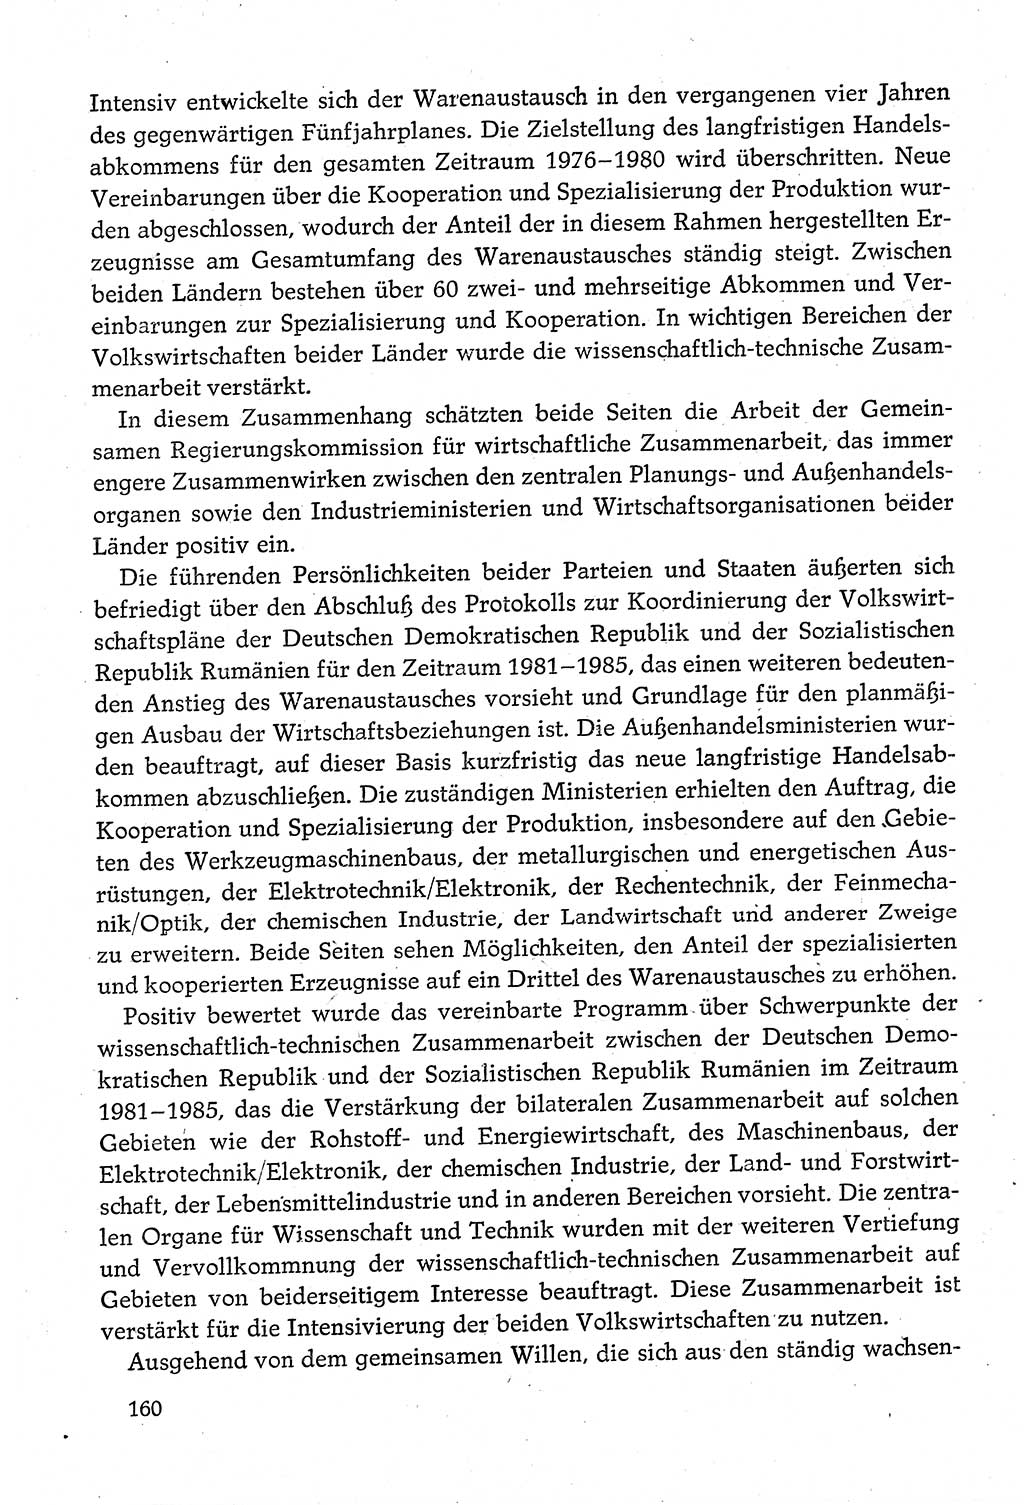 Dokumente der Sozialistischen Einheitspartei Deutschlands (SED) [Deutsche Demokratische Republik (DDR)] 1980-1981, Seite 160 (Dok. SED DDR 1980-1981, S. 160)